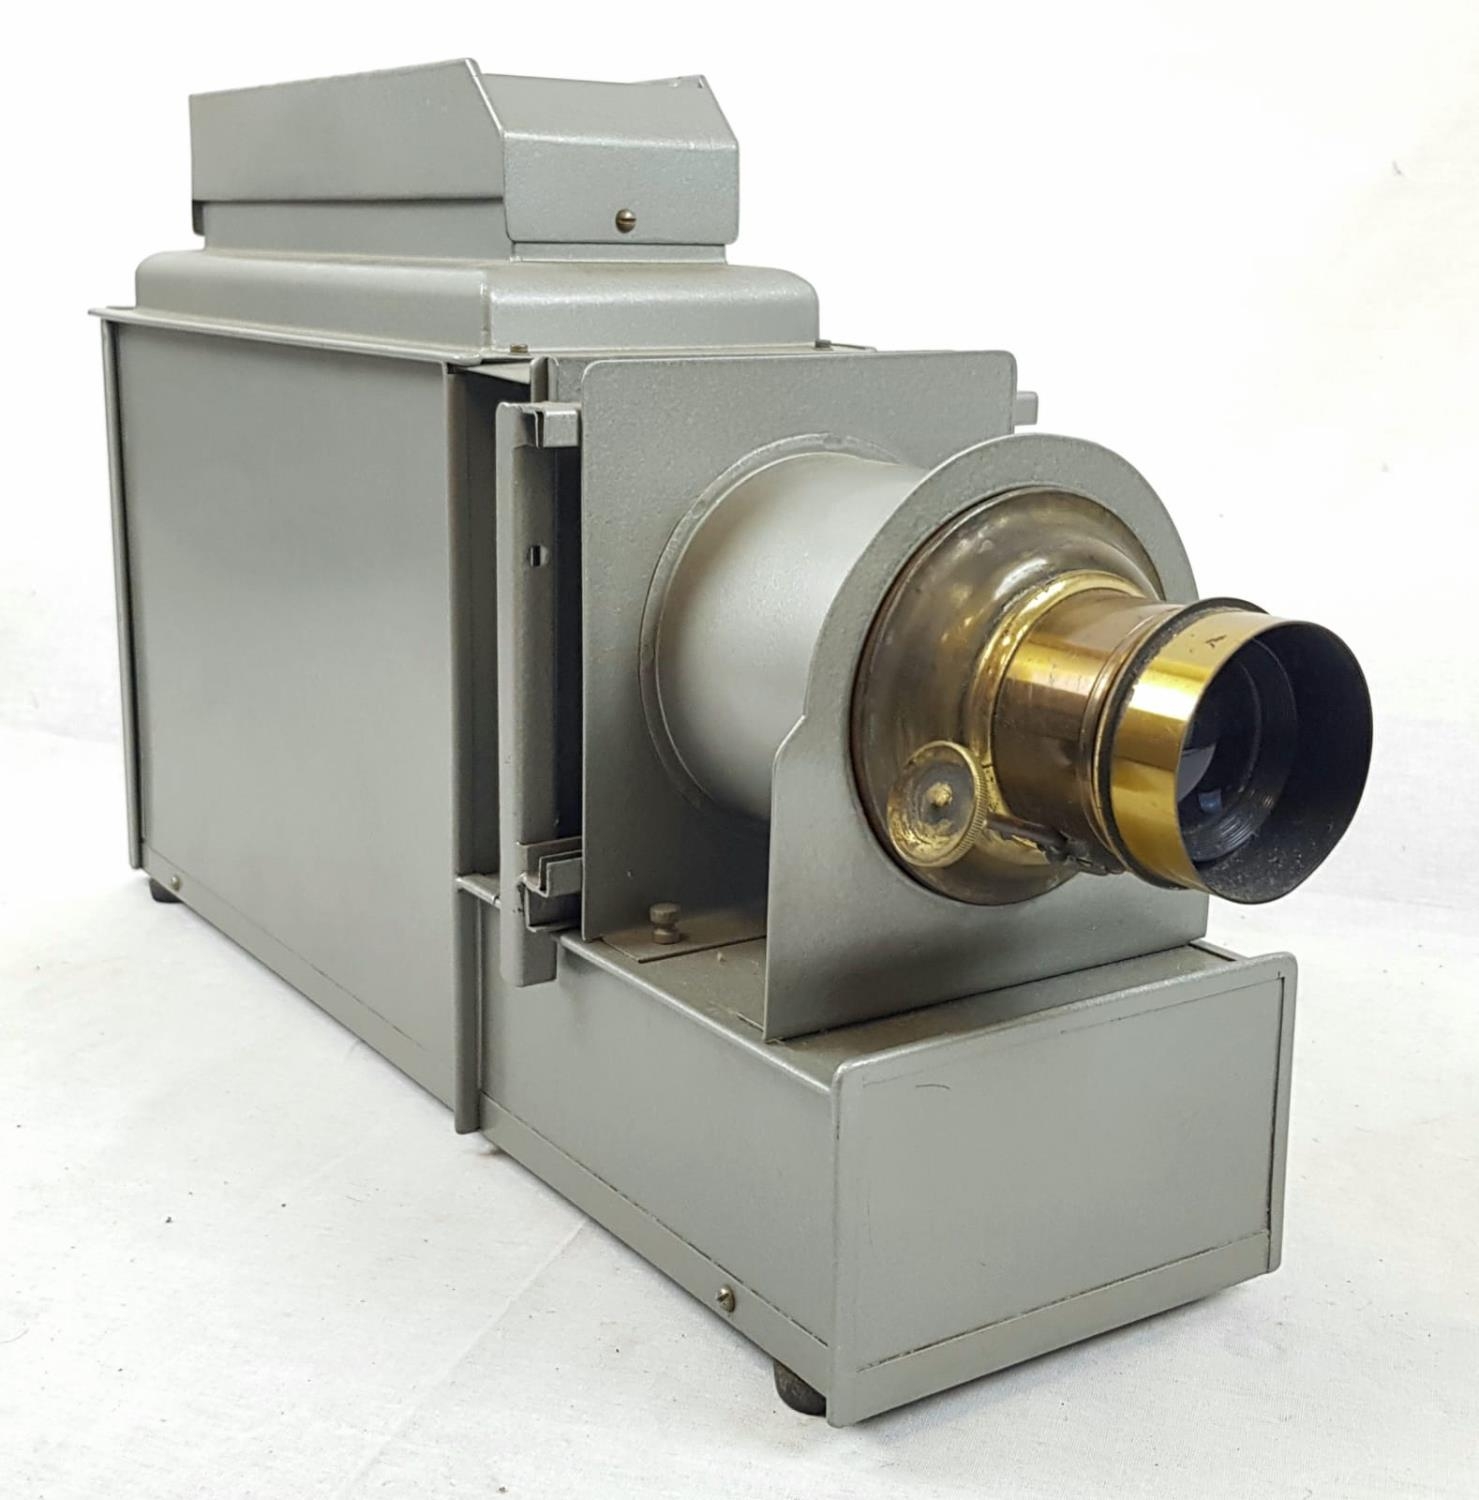 A Vintage Slide Projector. Adjustable Brass-Cased Lens. As Found. 55 x 33cm.